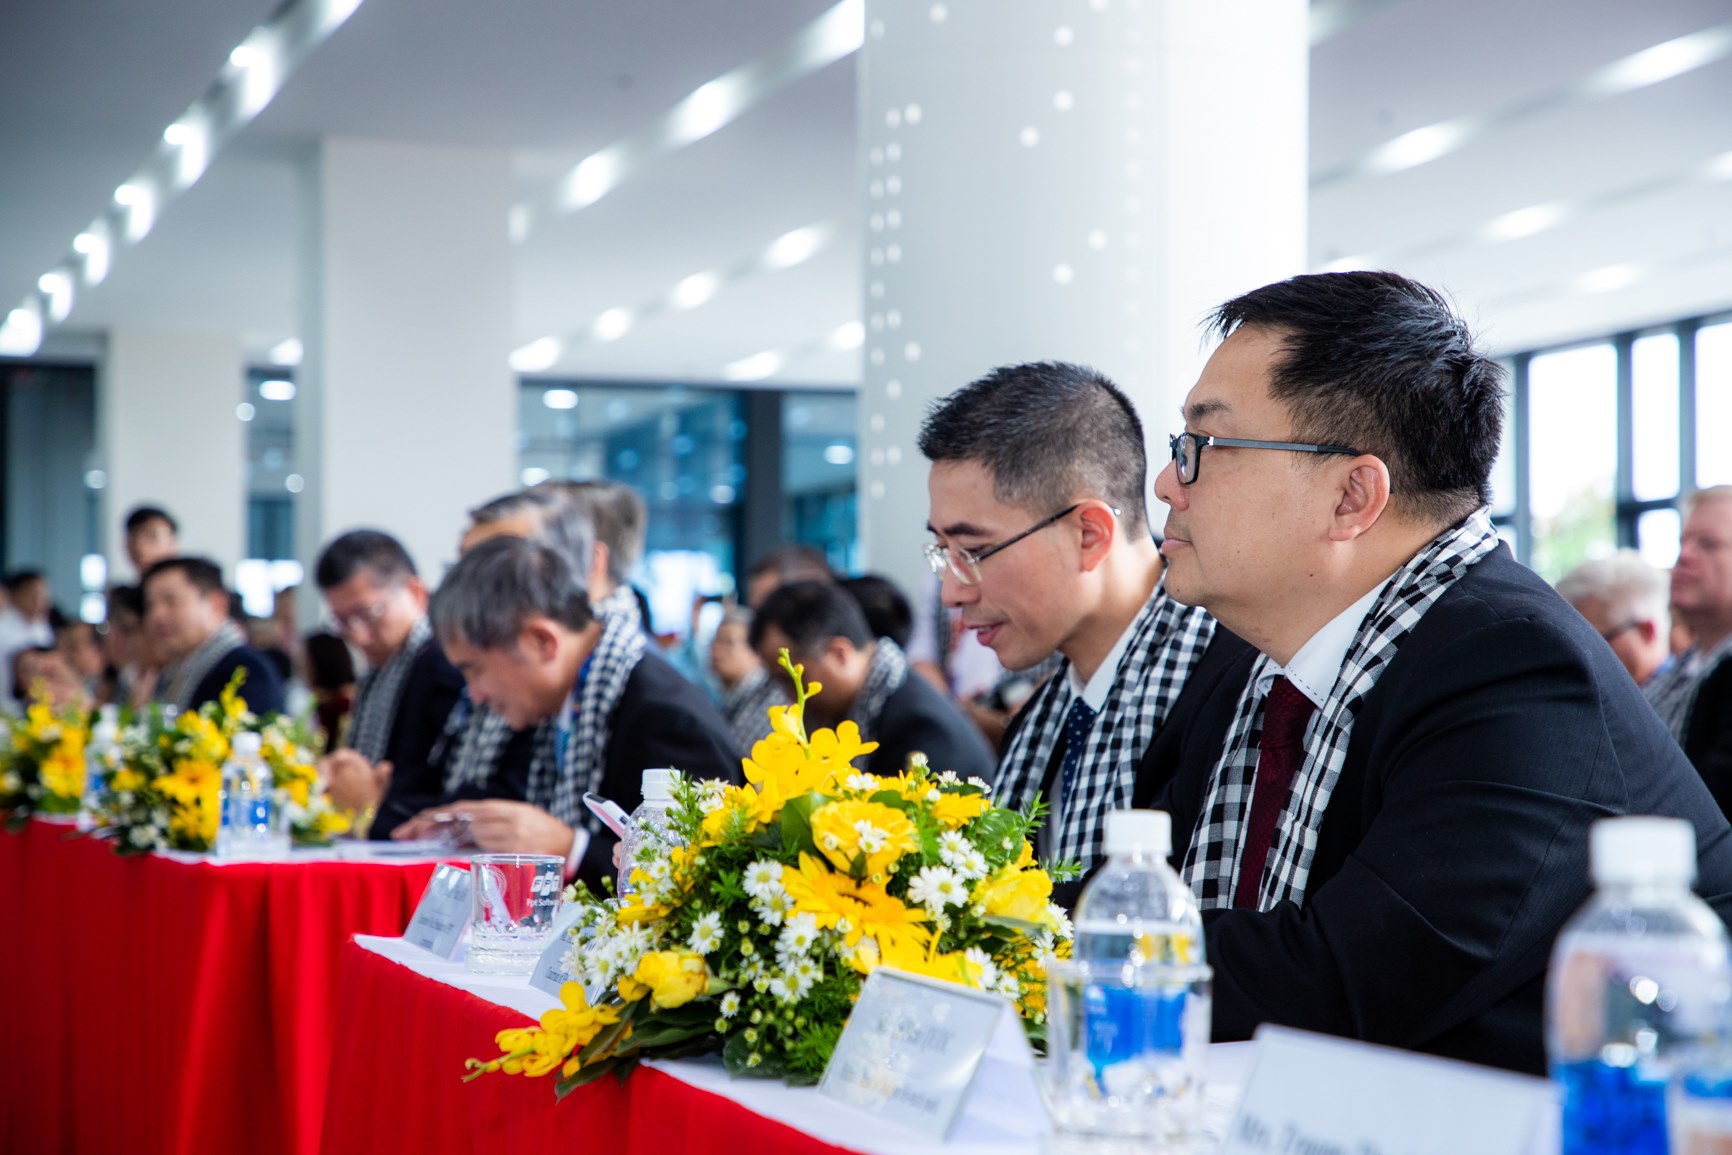 FPT Software khánh thành F-Town 3 - Tổ hợp văn phòng công nghệ hiện đại giữa lòng TP. Hồ Chí Minh